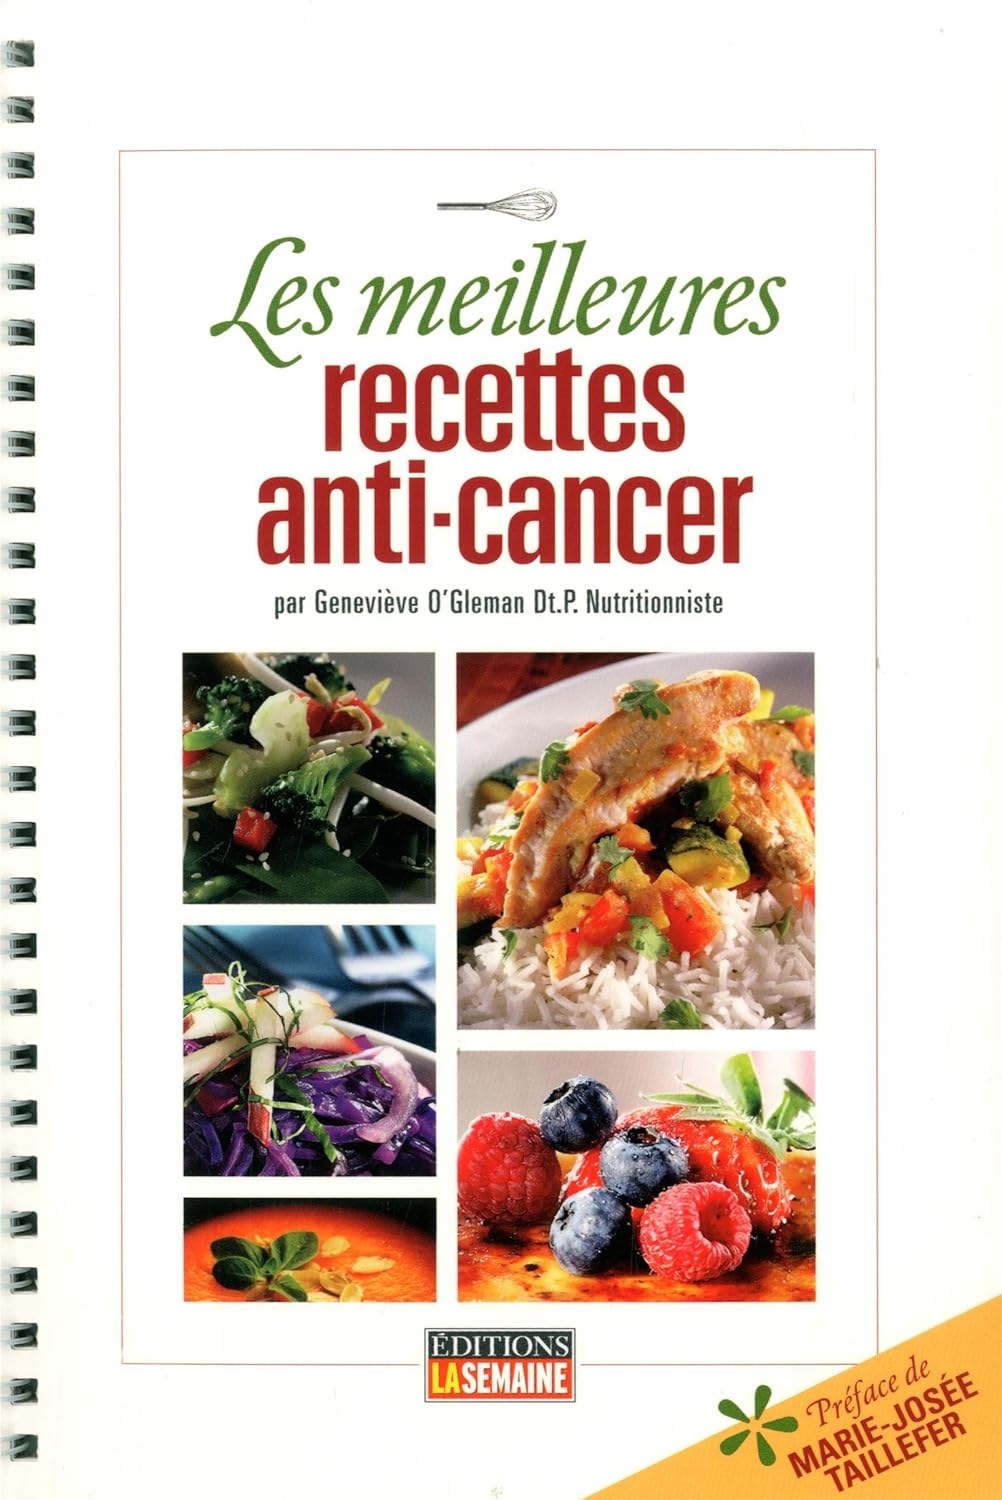 Les meilleures recettes anti-cancer - Geneviève O'Gleman